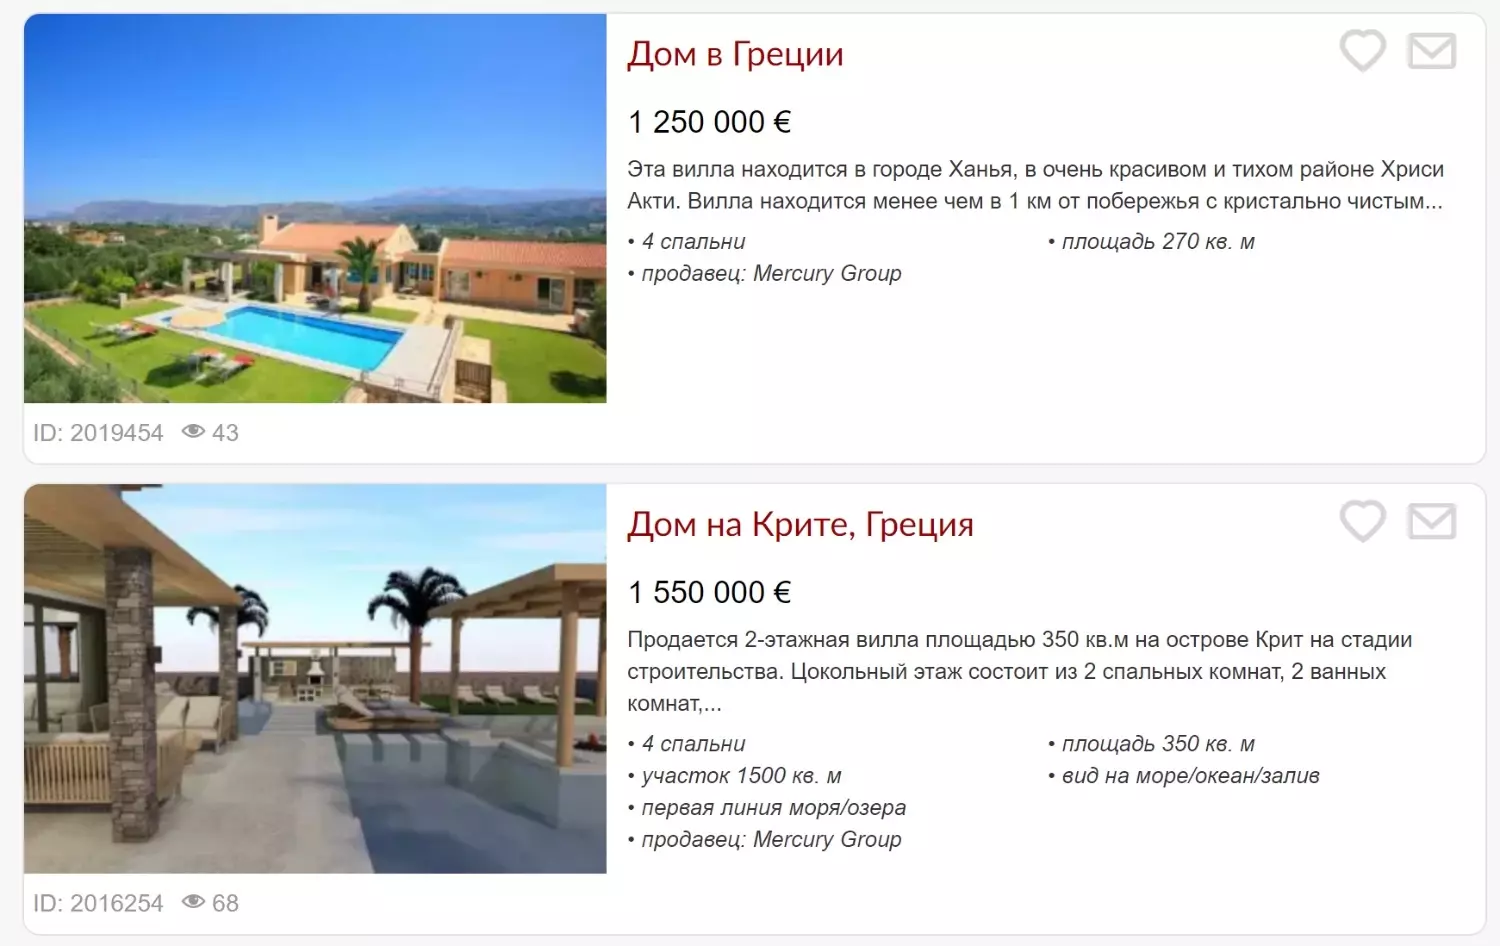 Для получения ВНЖ Греции необходимо купить дом стоимостью от 800 тыс. евро и иметь второе гражданство